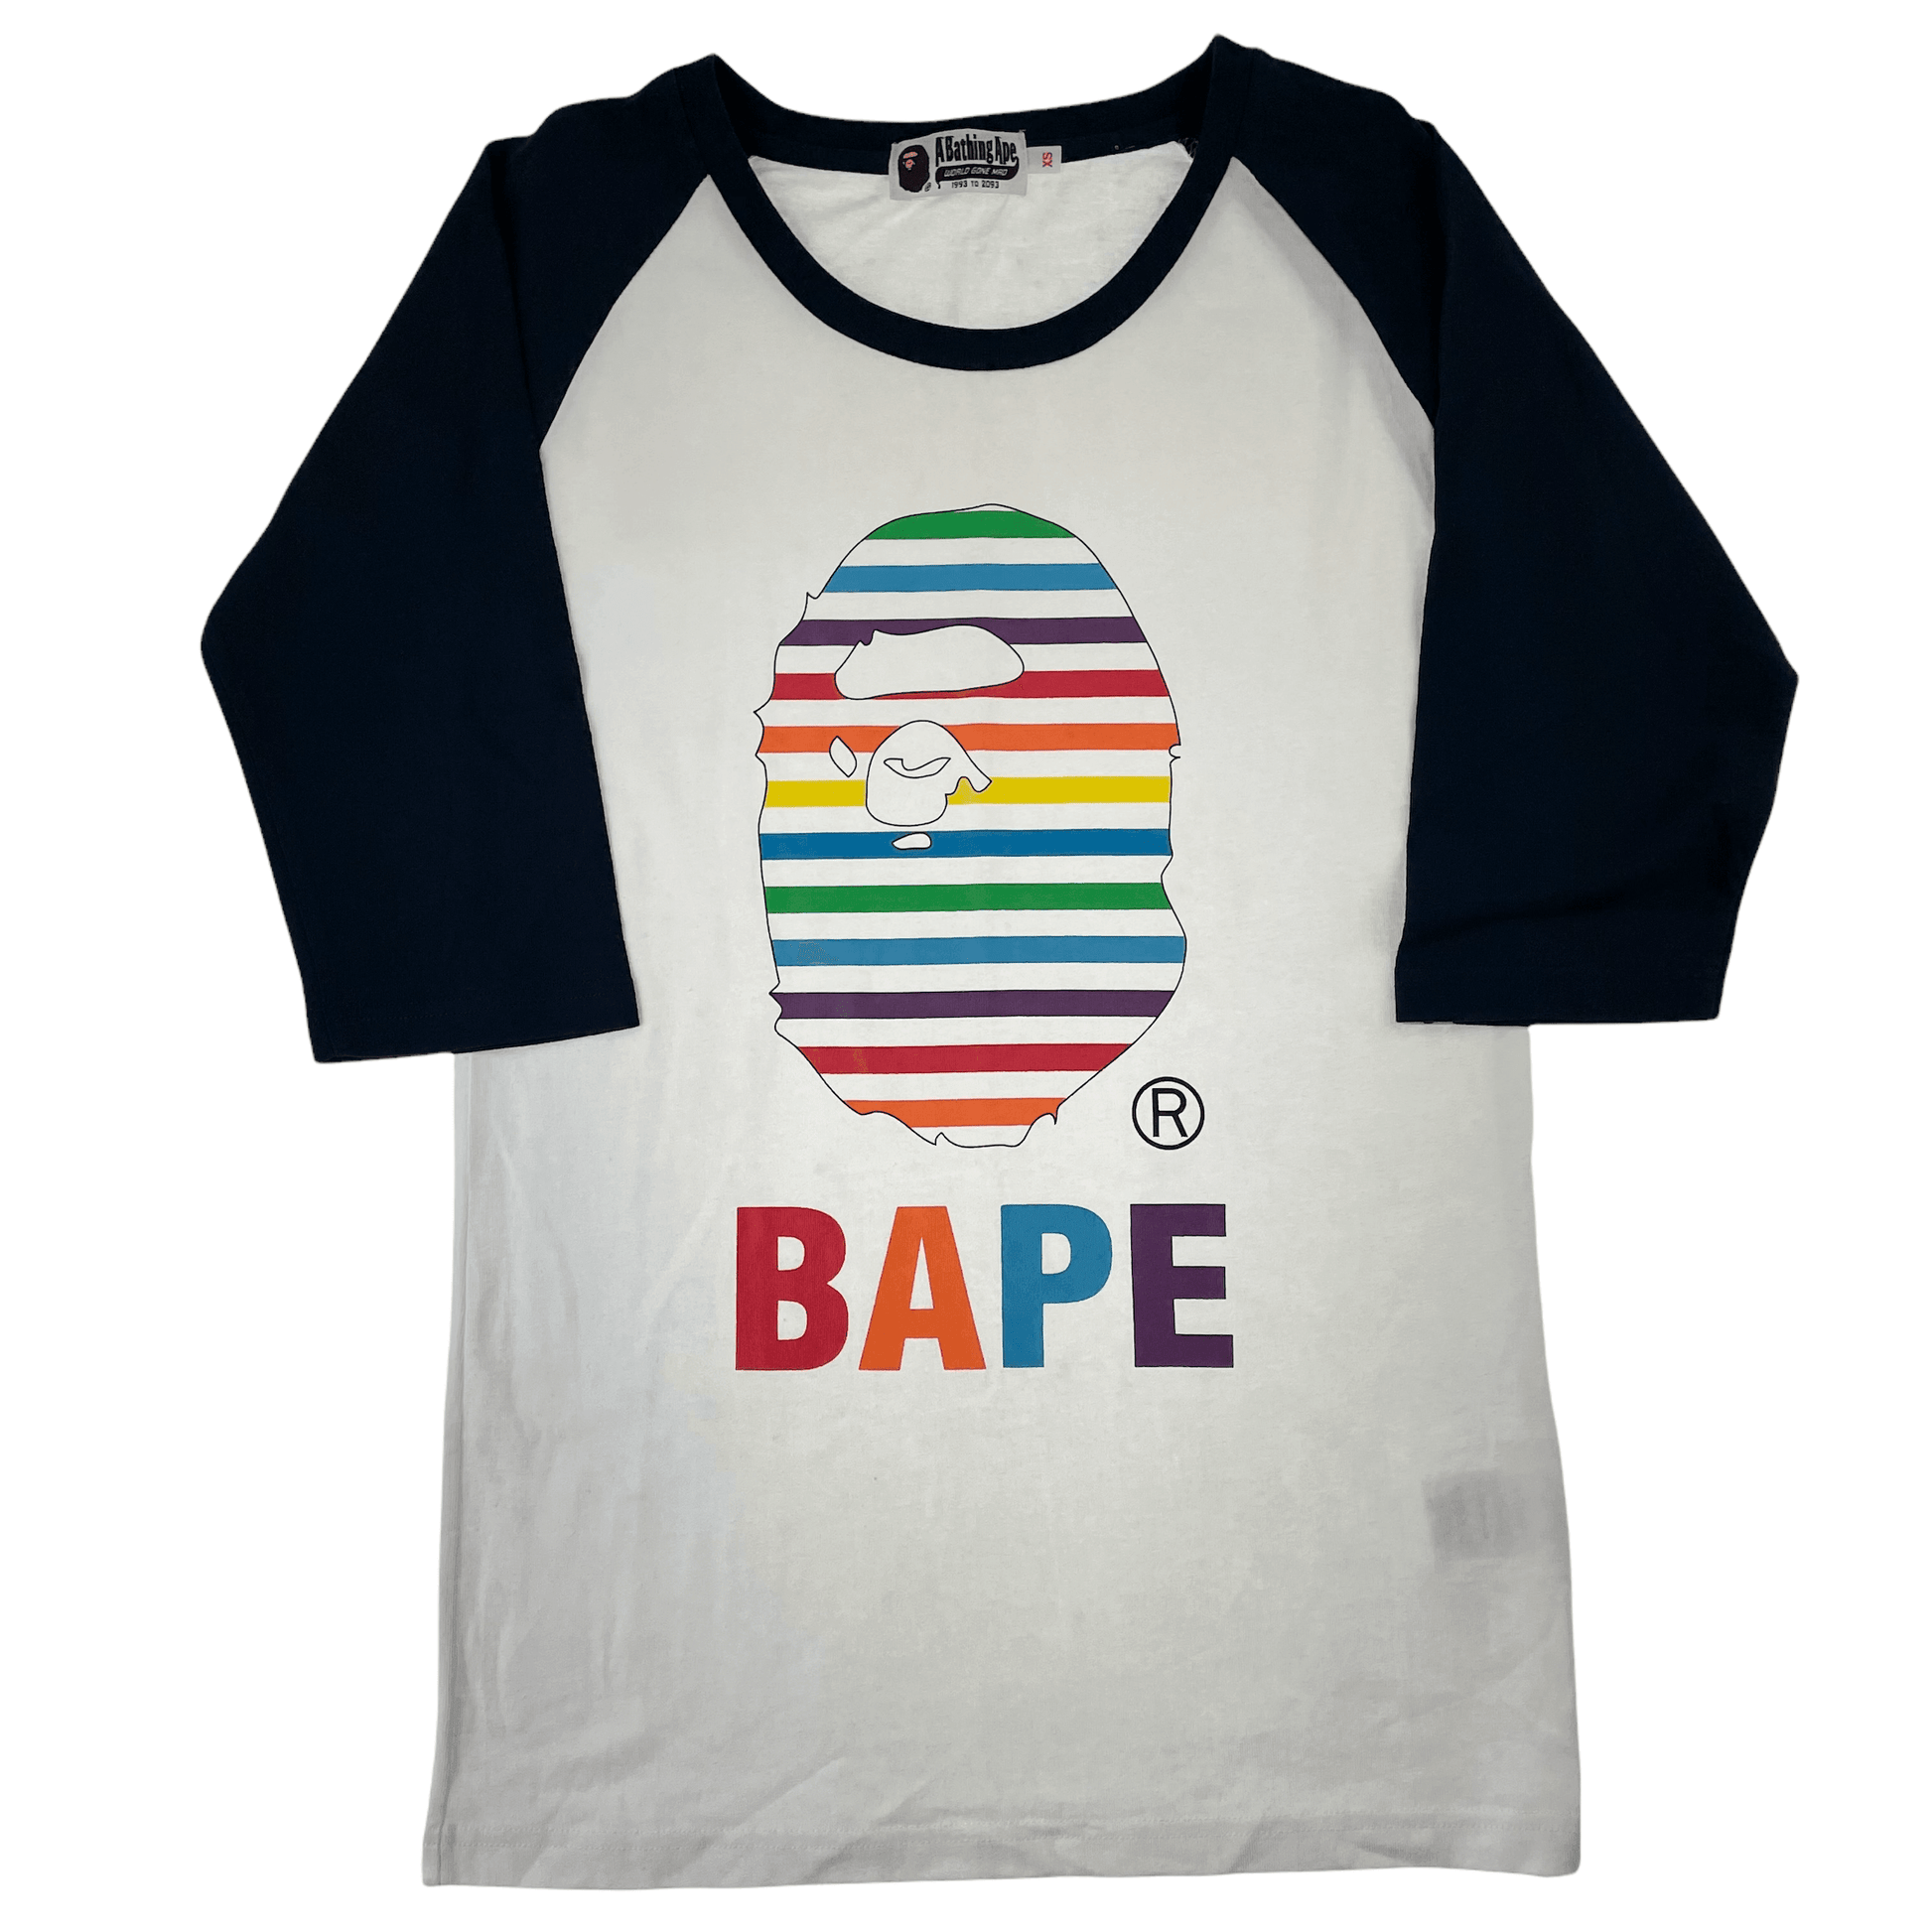 Bape logo t shirt women’s size XS - Known Source